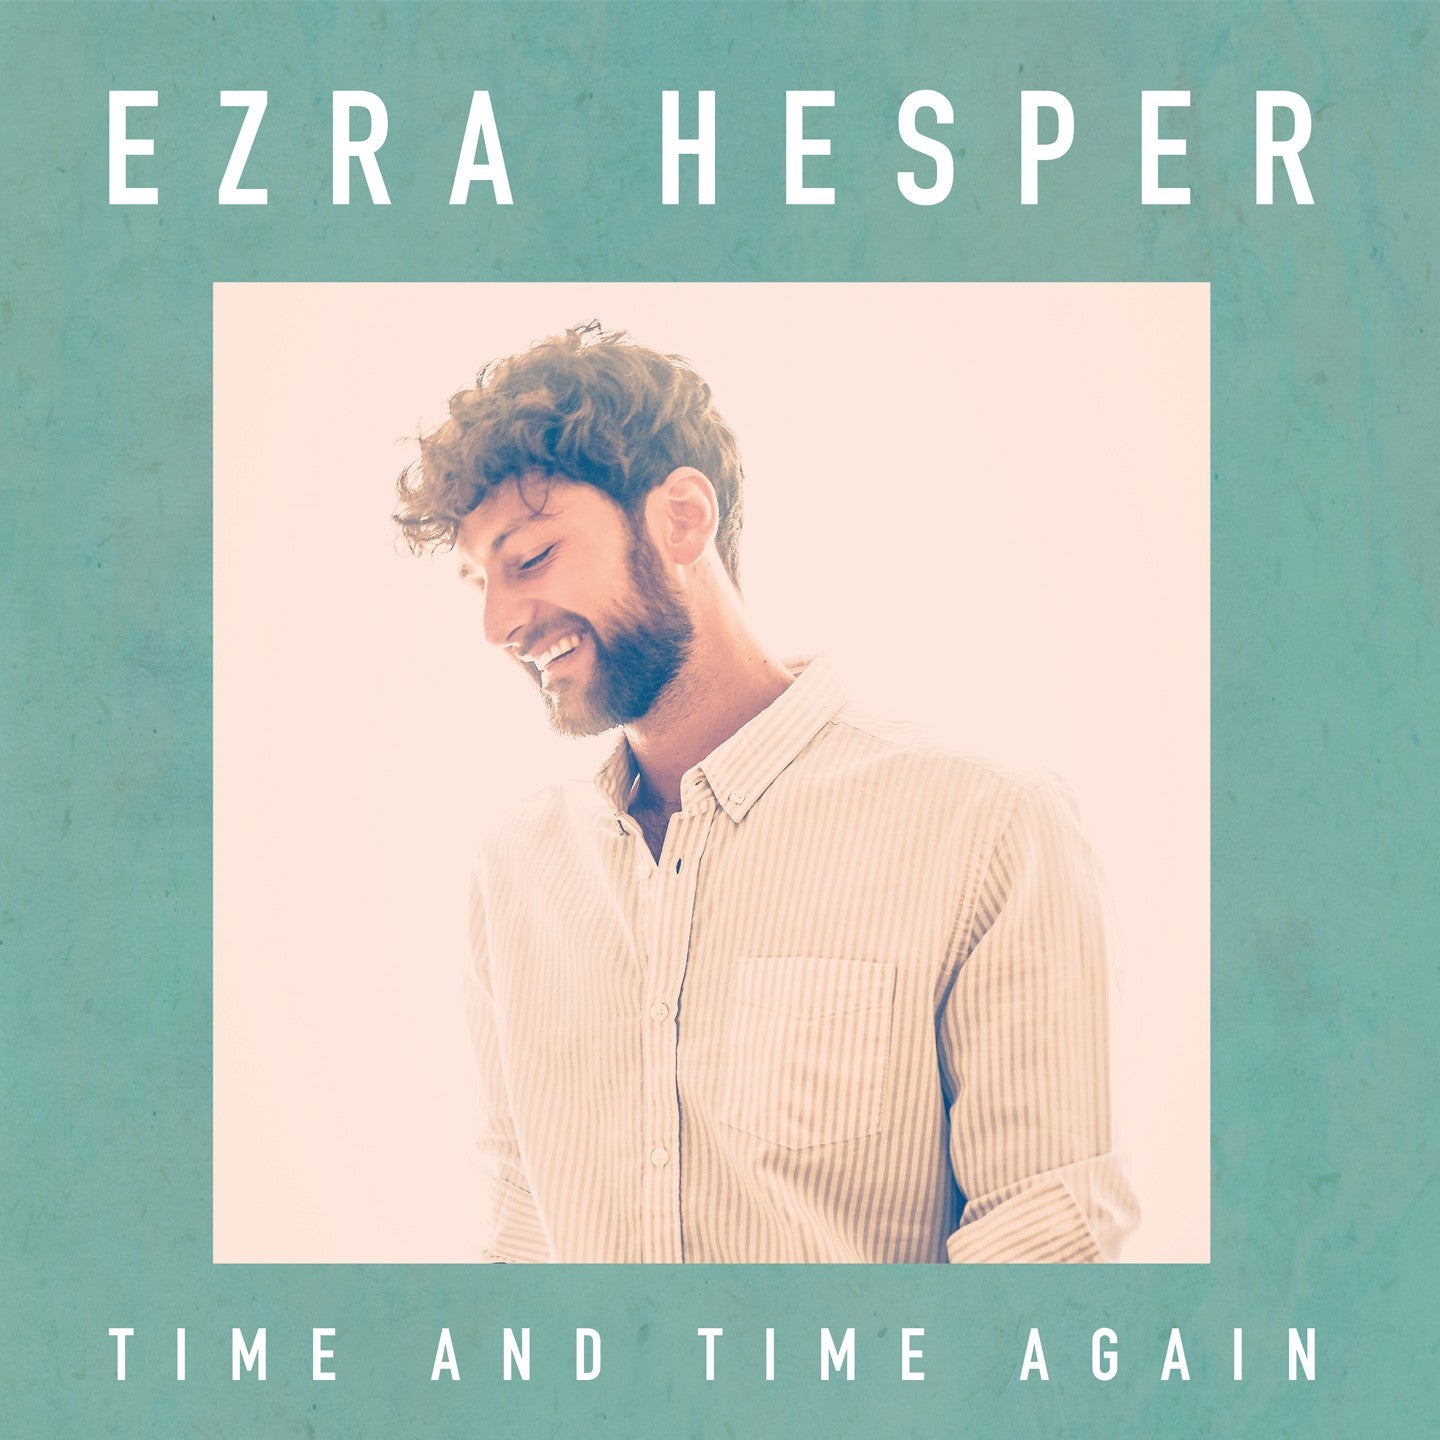 Pochette de : TIME AND TIME AGAIN - EZRA HESPER (CD)